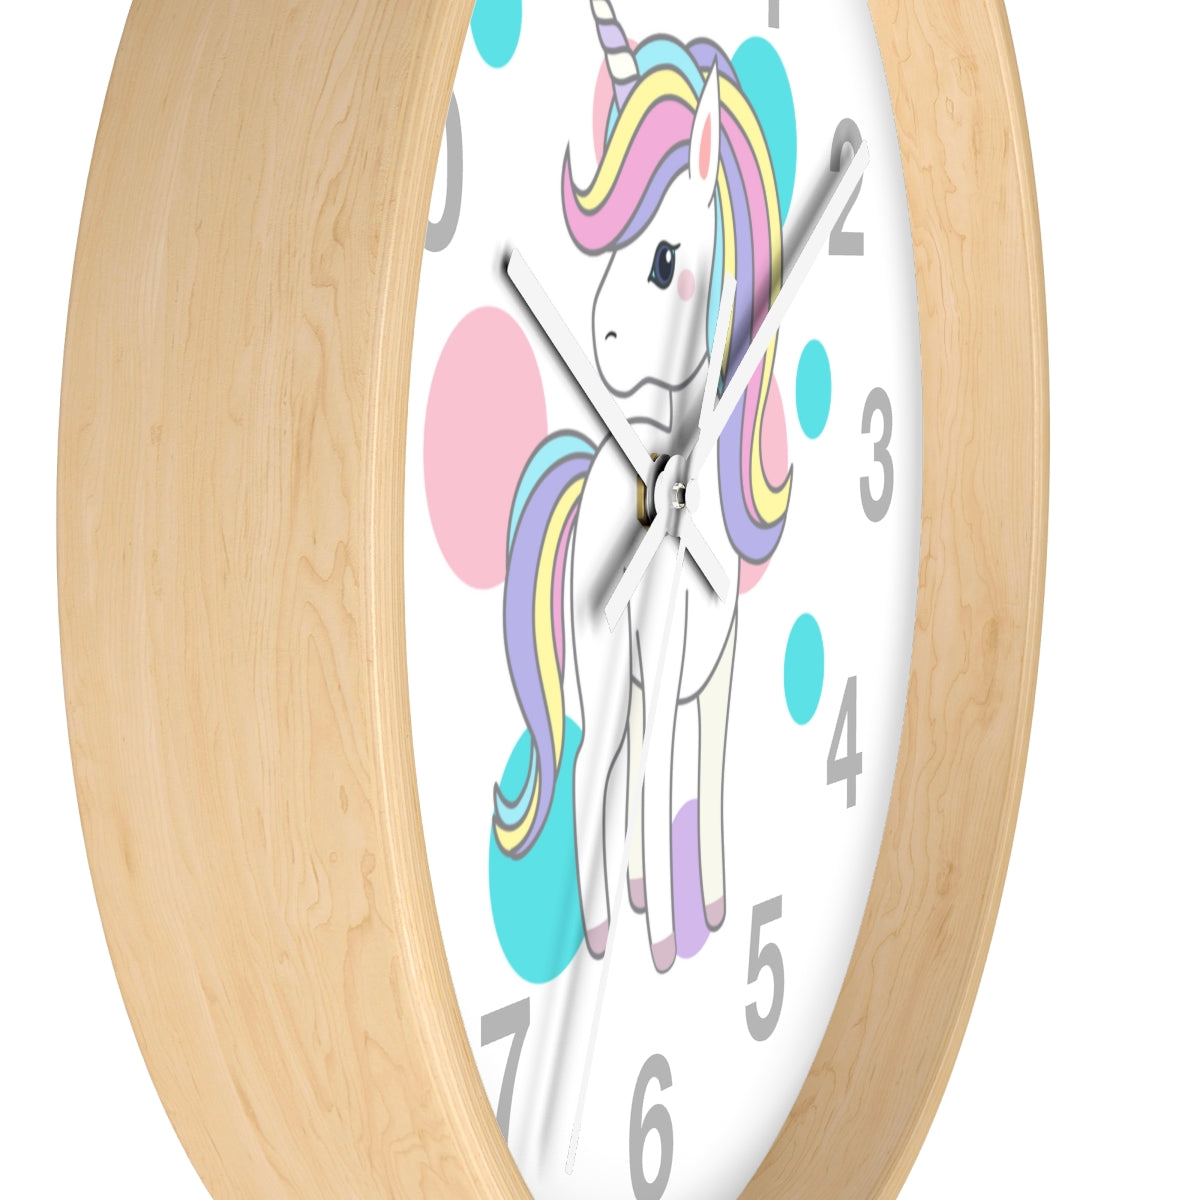 Dot Unicorn Wall clock